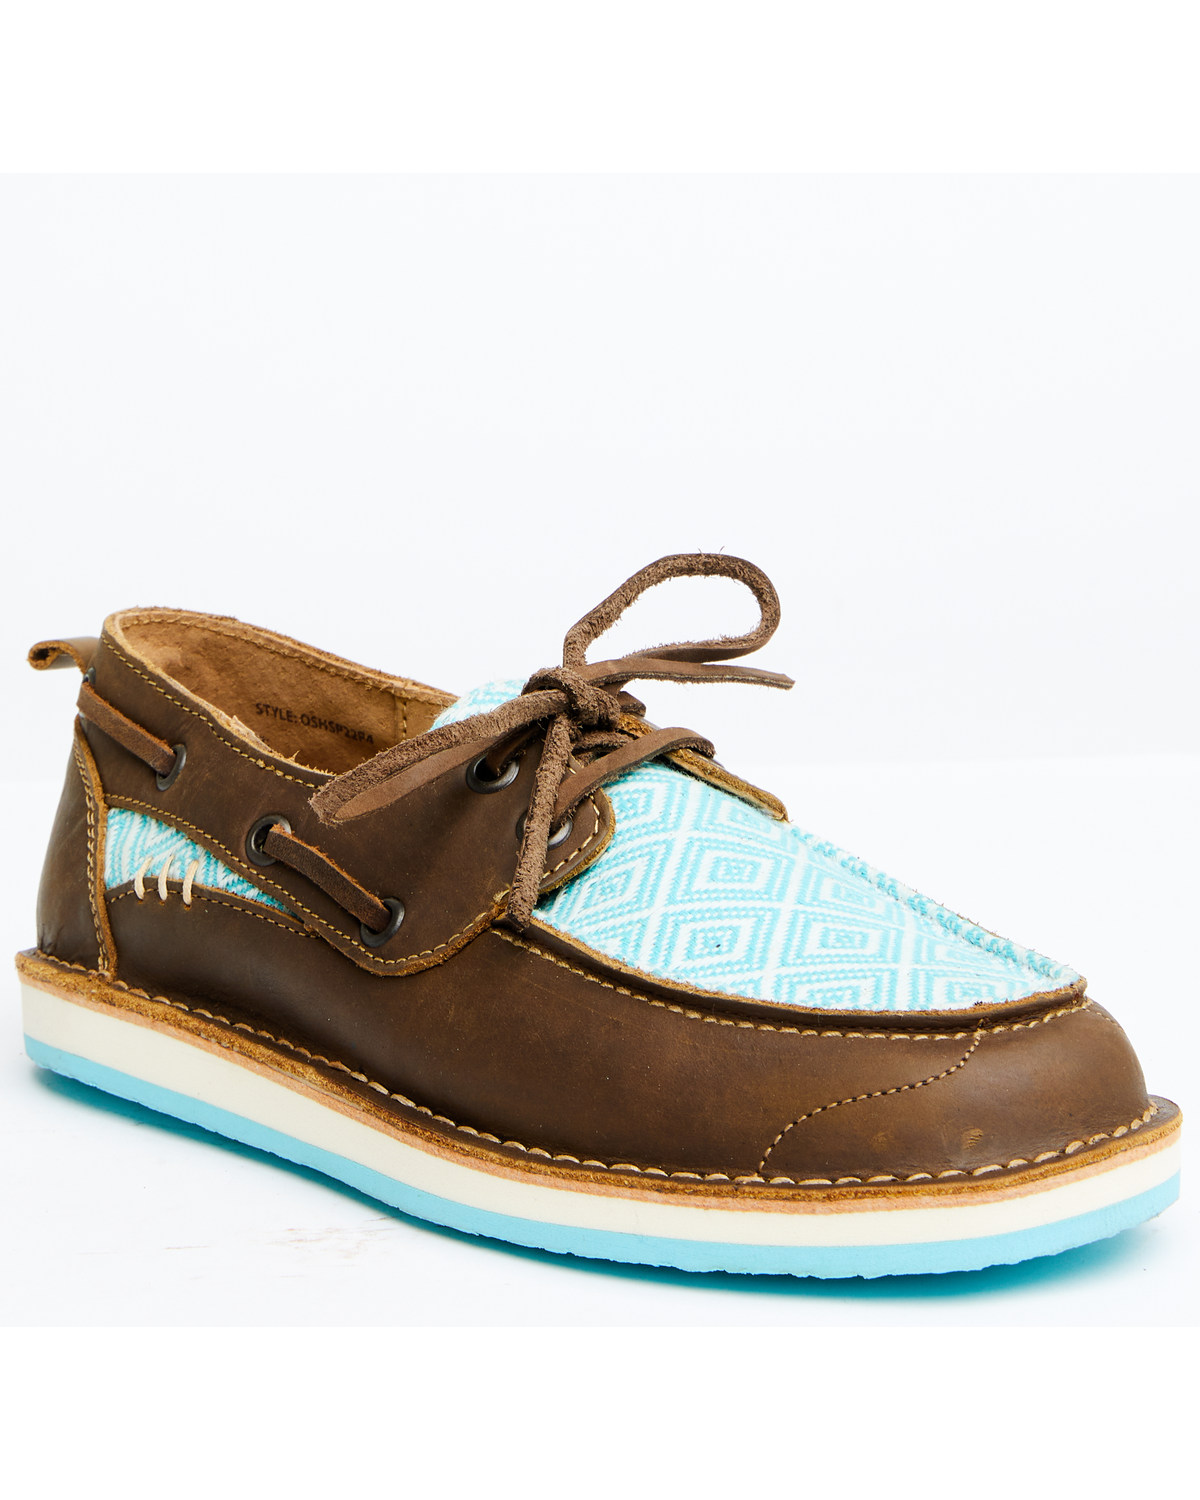 RANK 45® Women's Southwestern Slip-On Casual Shoe - Moc Toe